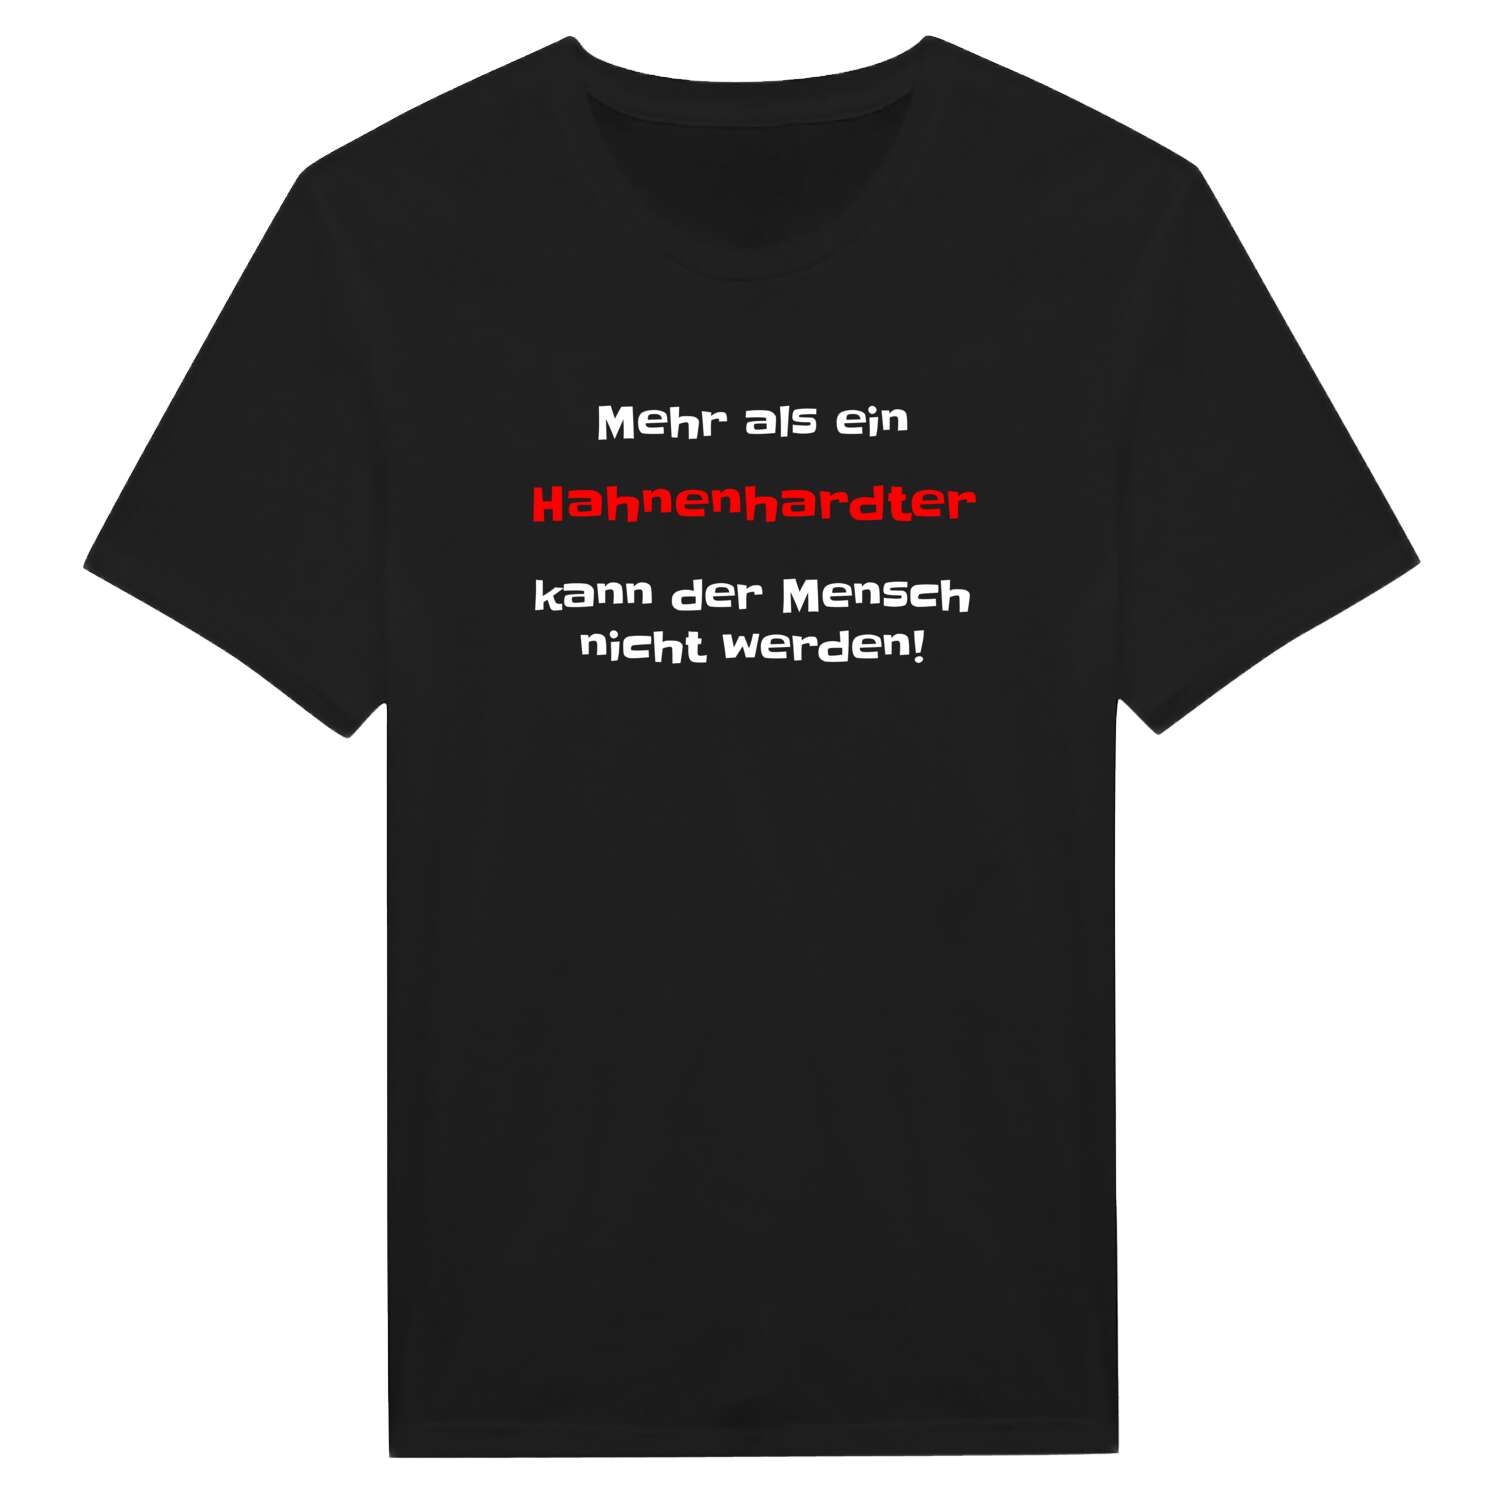 Hahnenhardt T-Shirt »Mehr als ein«